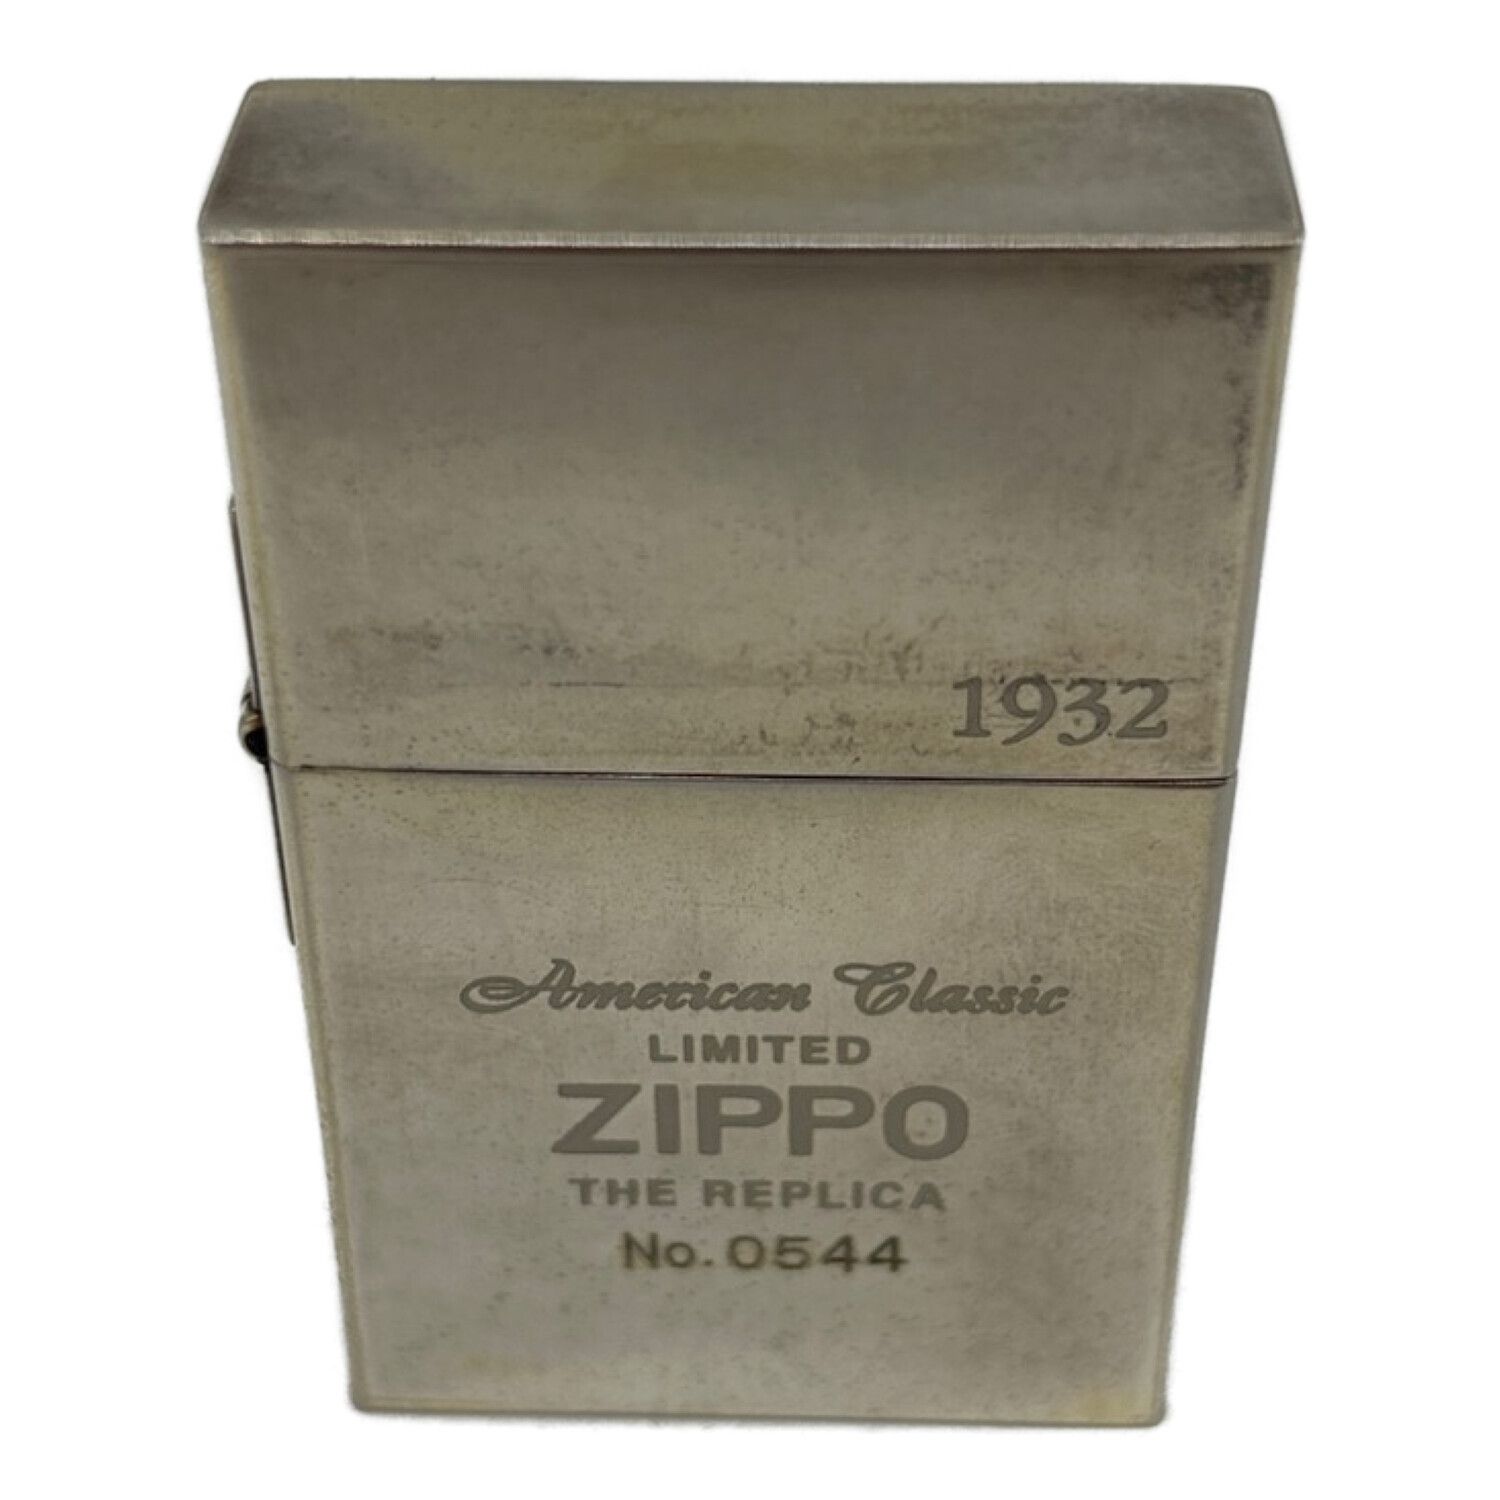 zIppo 1932 REPLICA SECOND RELEASE